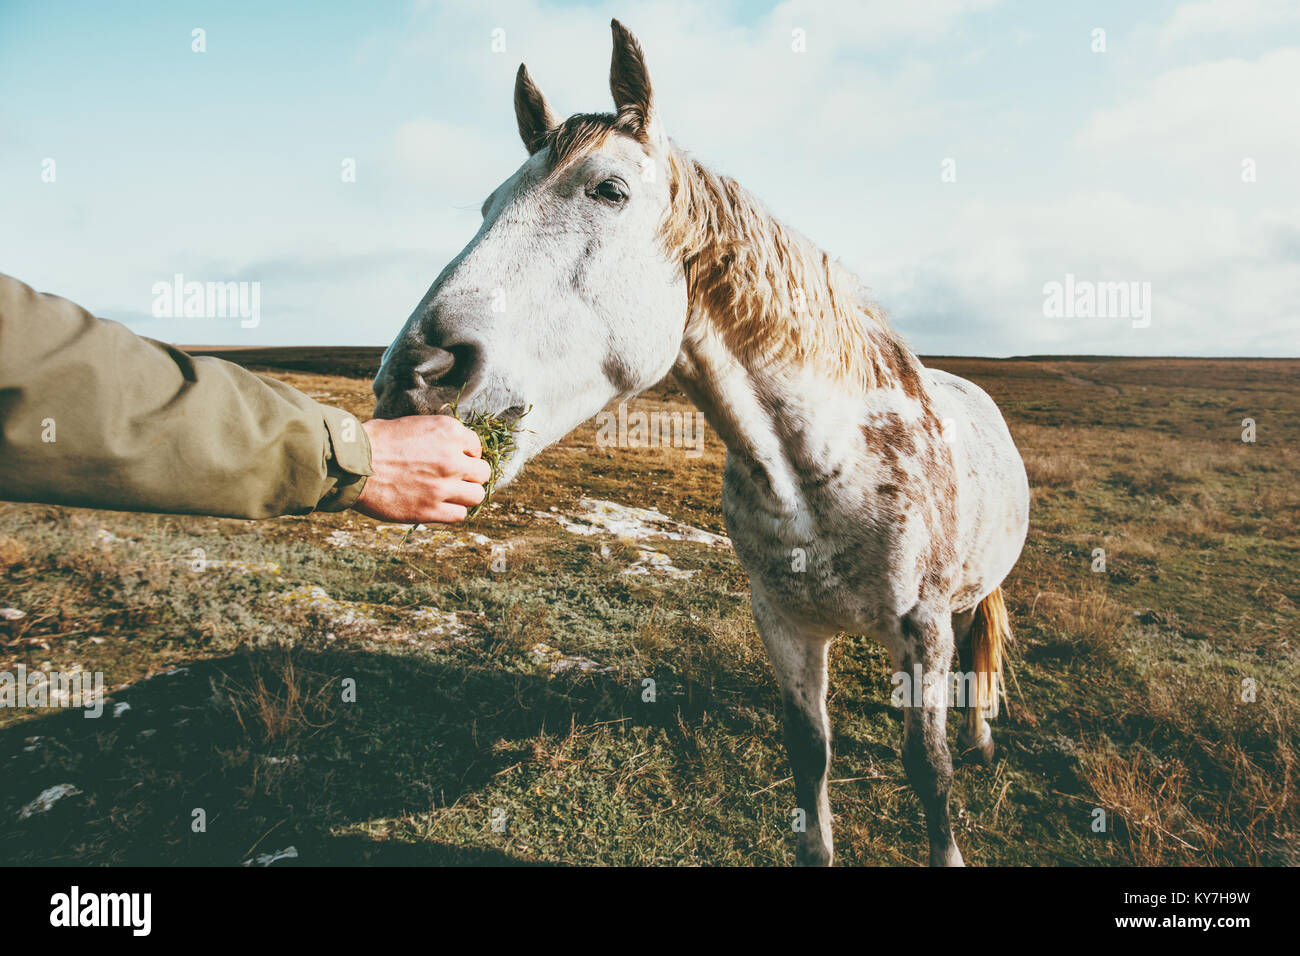 Man mano alimentazione cavallo bianco stile di vita animale e persone amicizia concetto di viaggio Foto Stock